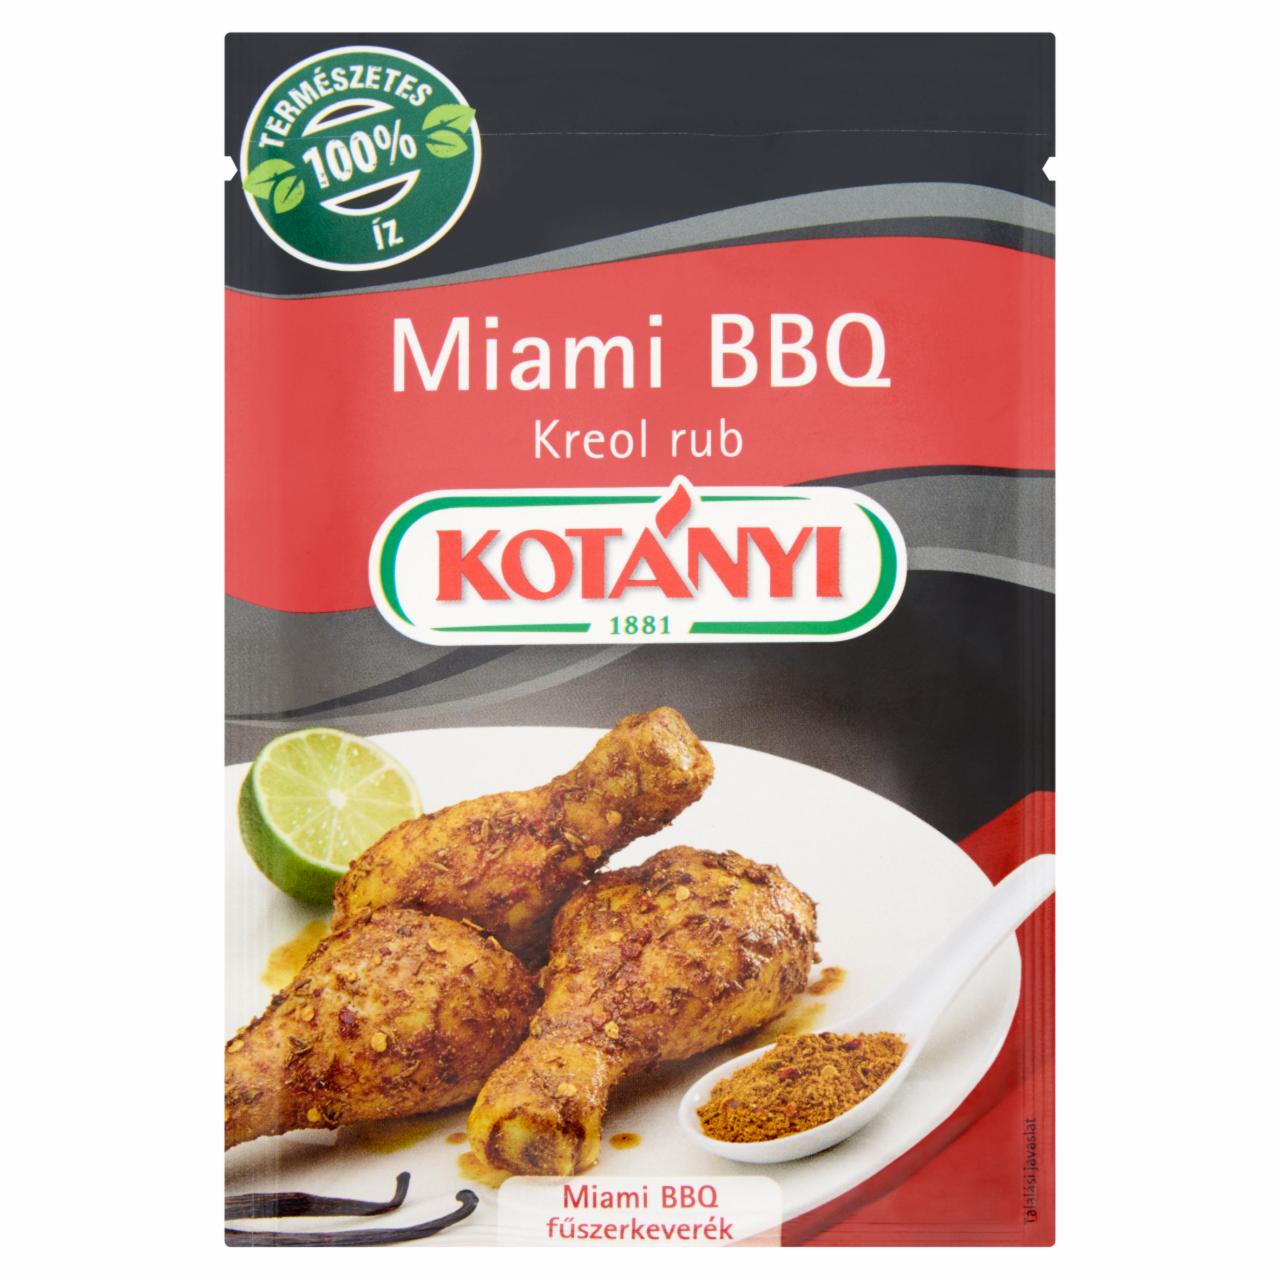 Képek - Kotányi Miami BBQ kreol rub fűszerkeverék 22 g